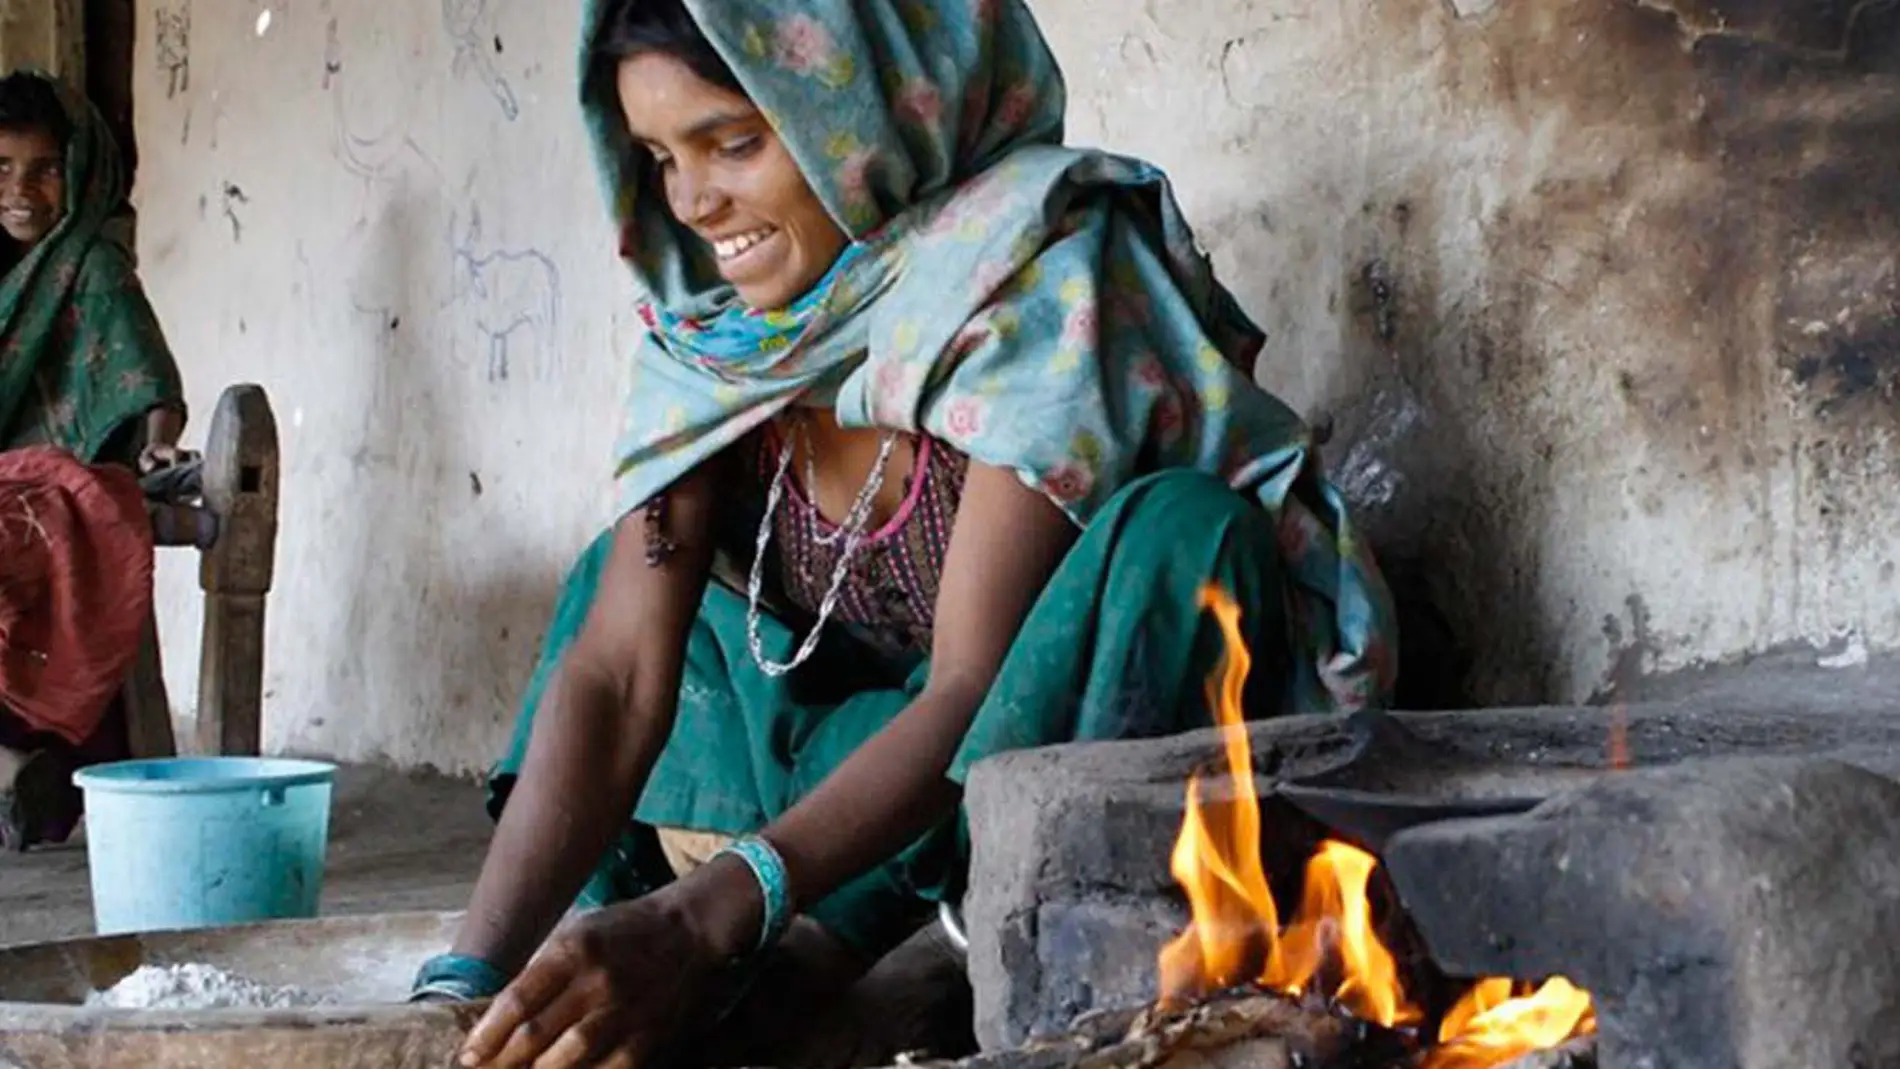 Entrar en la cocina es una de las prohibiciones que sufren en la India durante la menstruación.